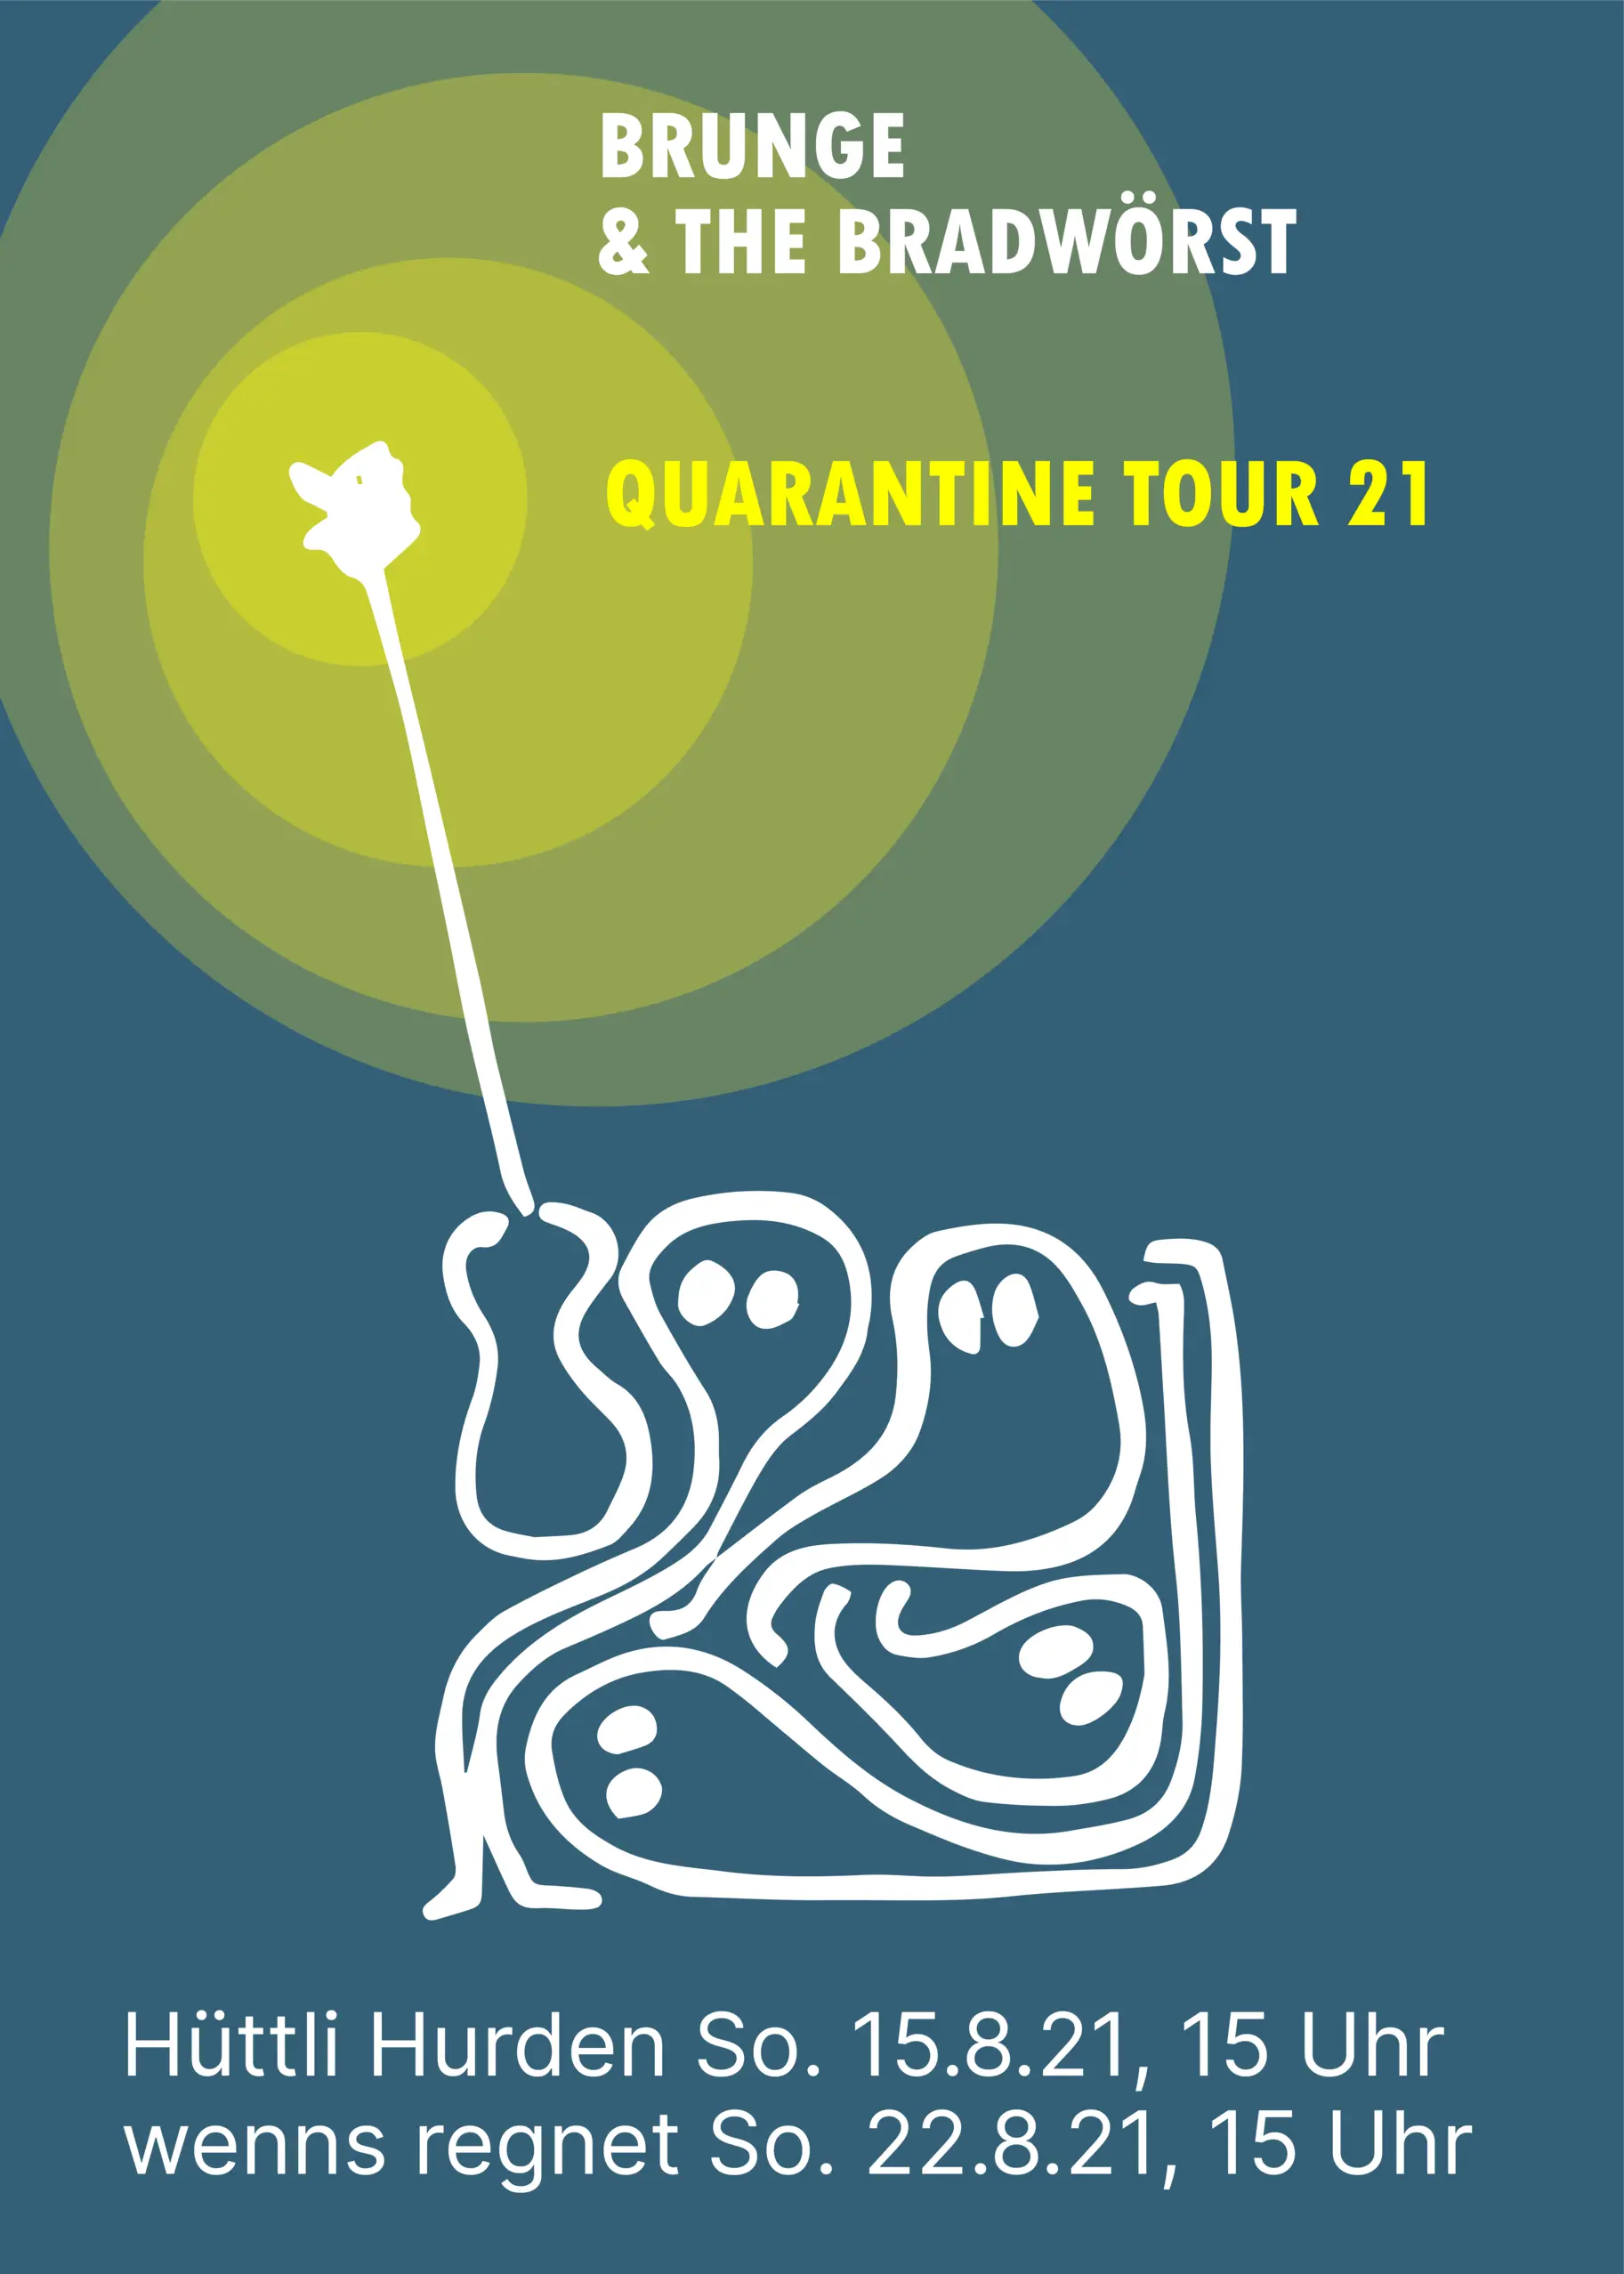 Event "quarantine tour 21"